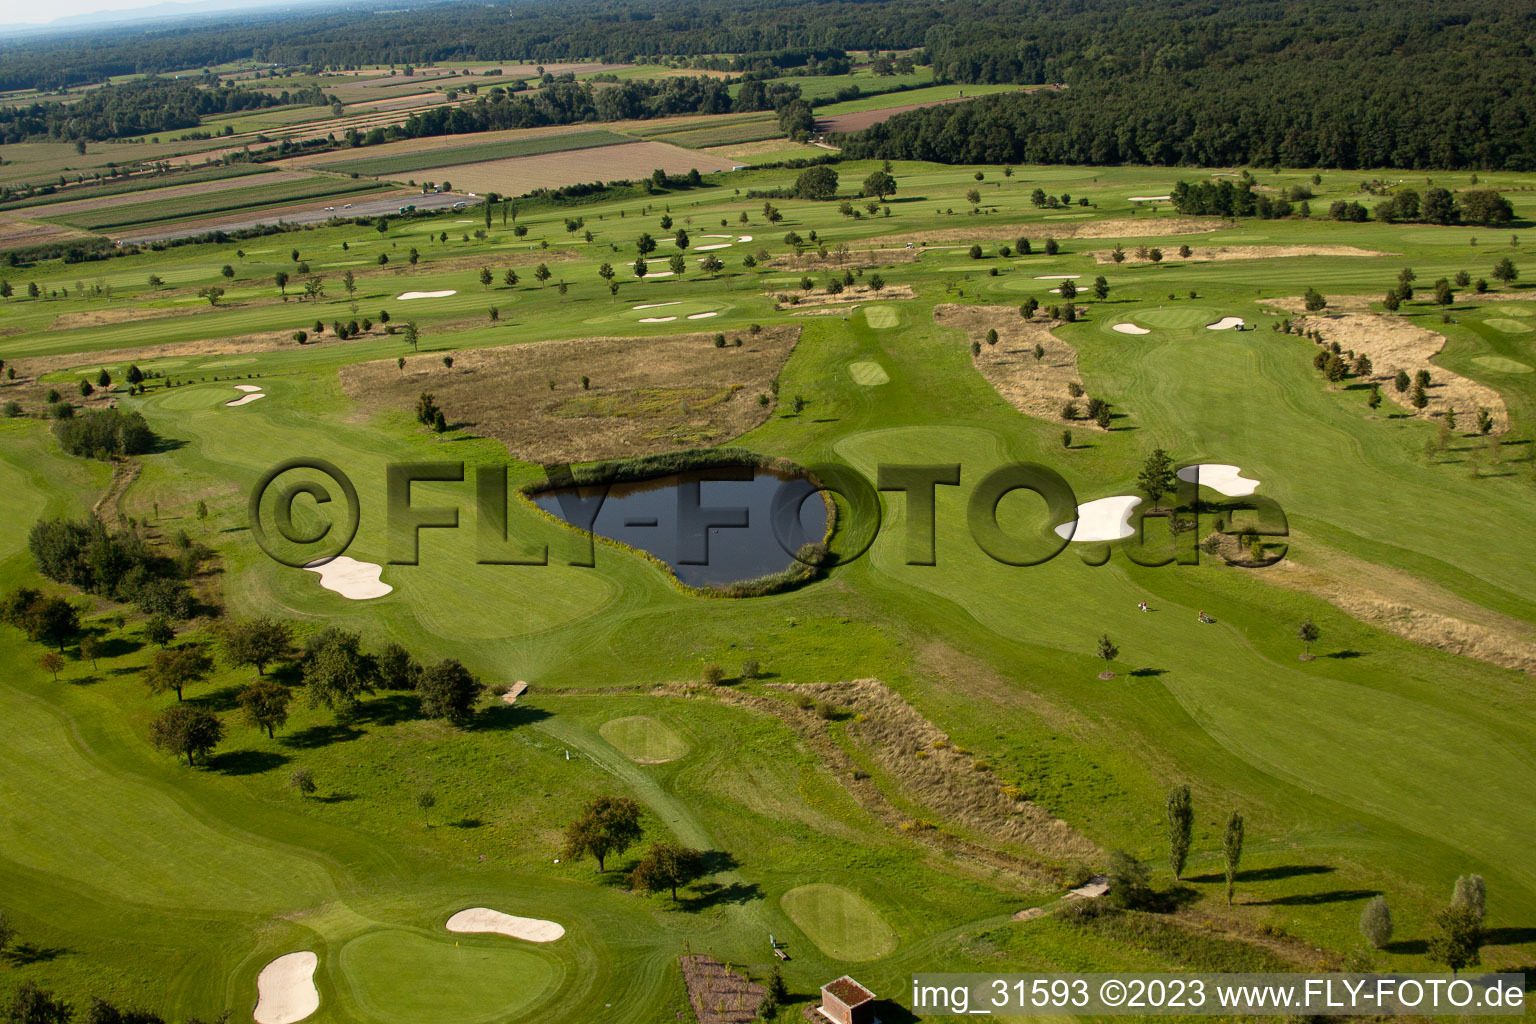 Club de golf Urloffen e. v à le quartier Urloffen in Appenweier dans le département Bade-Wurtemberg, Allemagne hors des airs